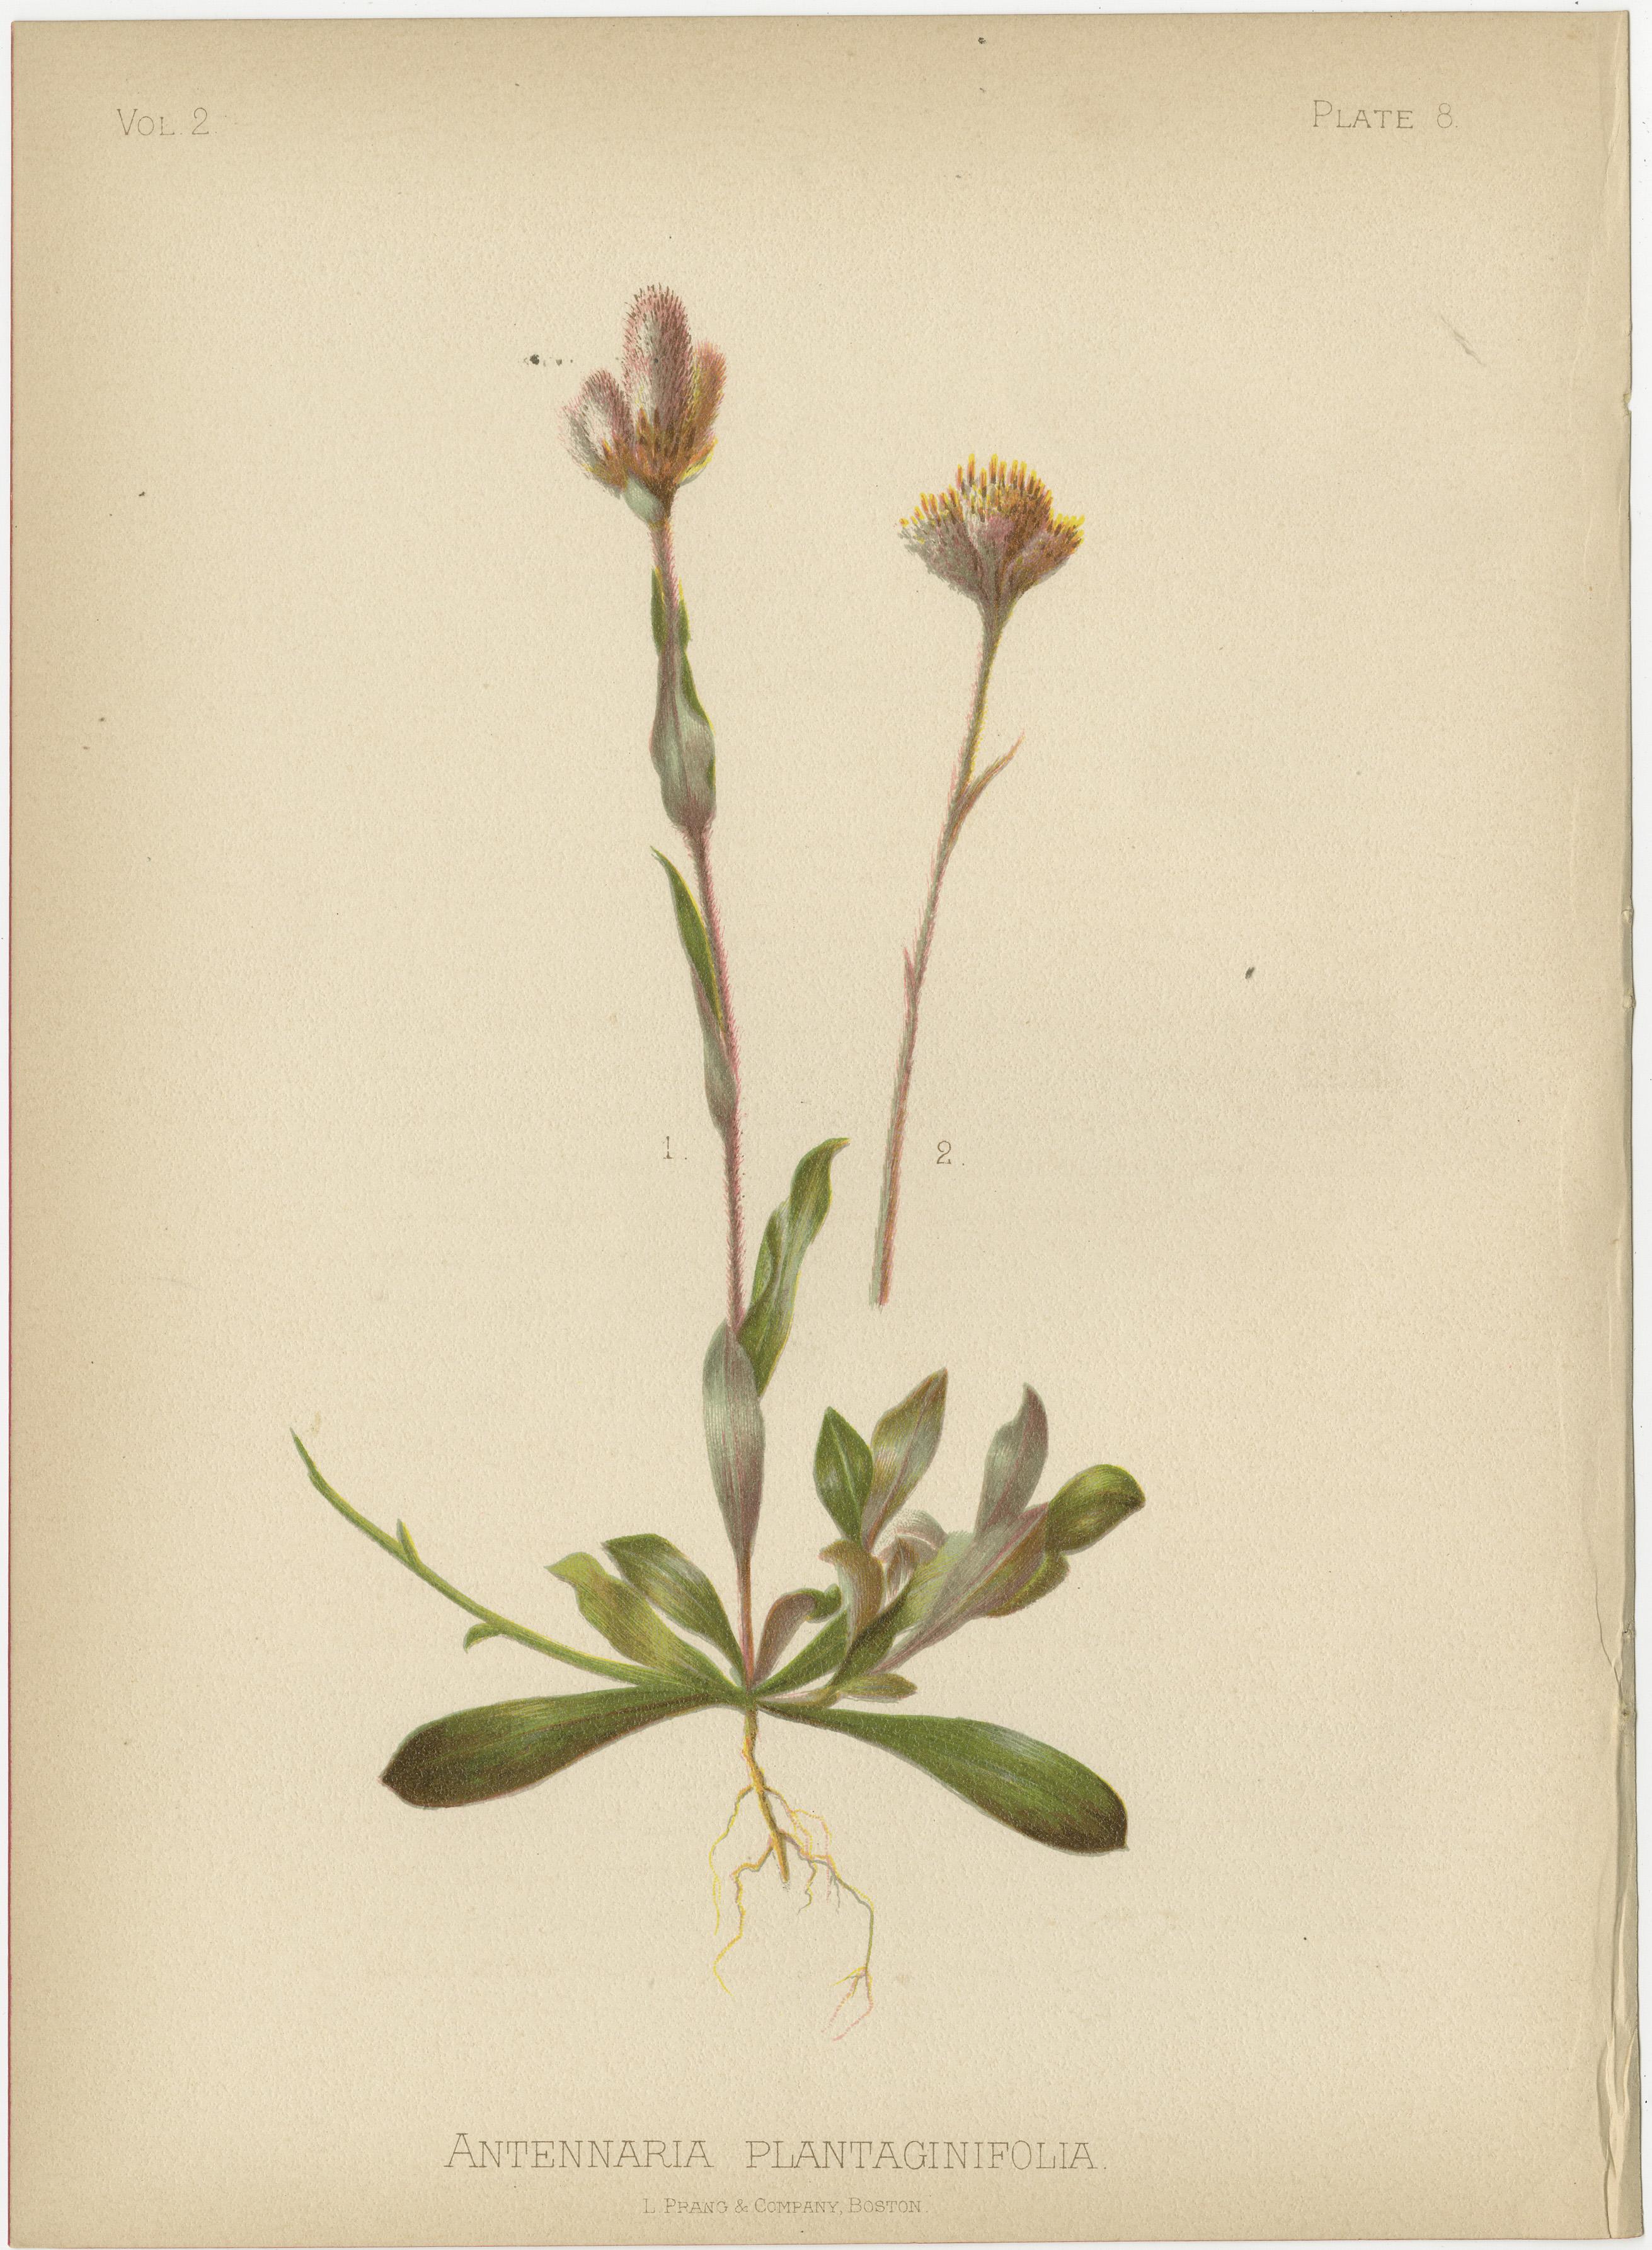 Diese vier exquisiten botanischen Illustrationen aus Thomas Meehans 1879 erschienener Publikation 